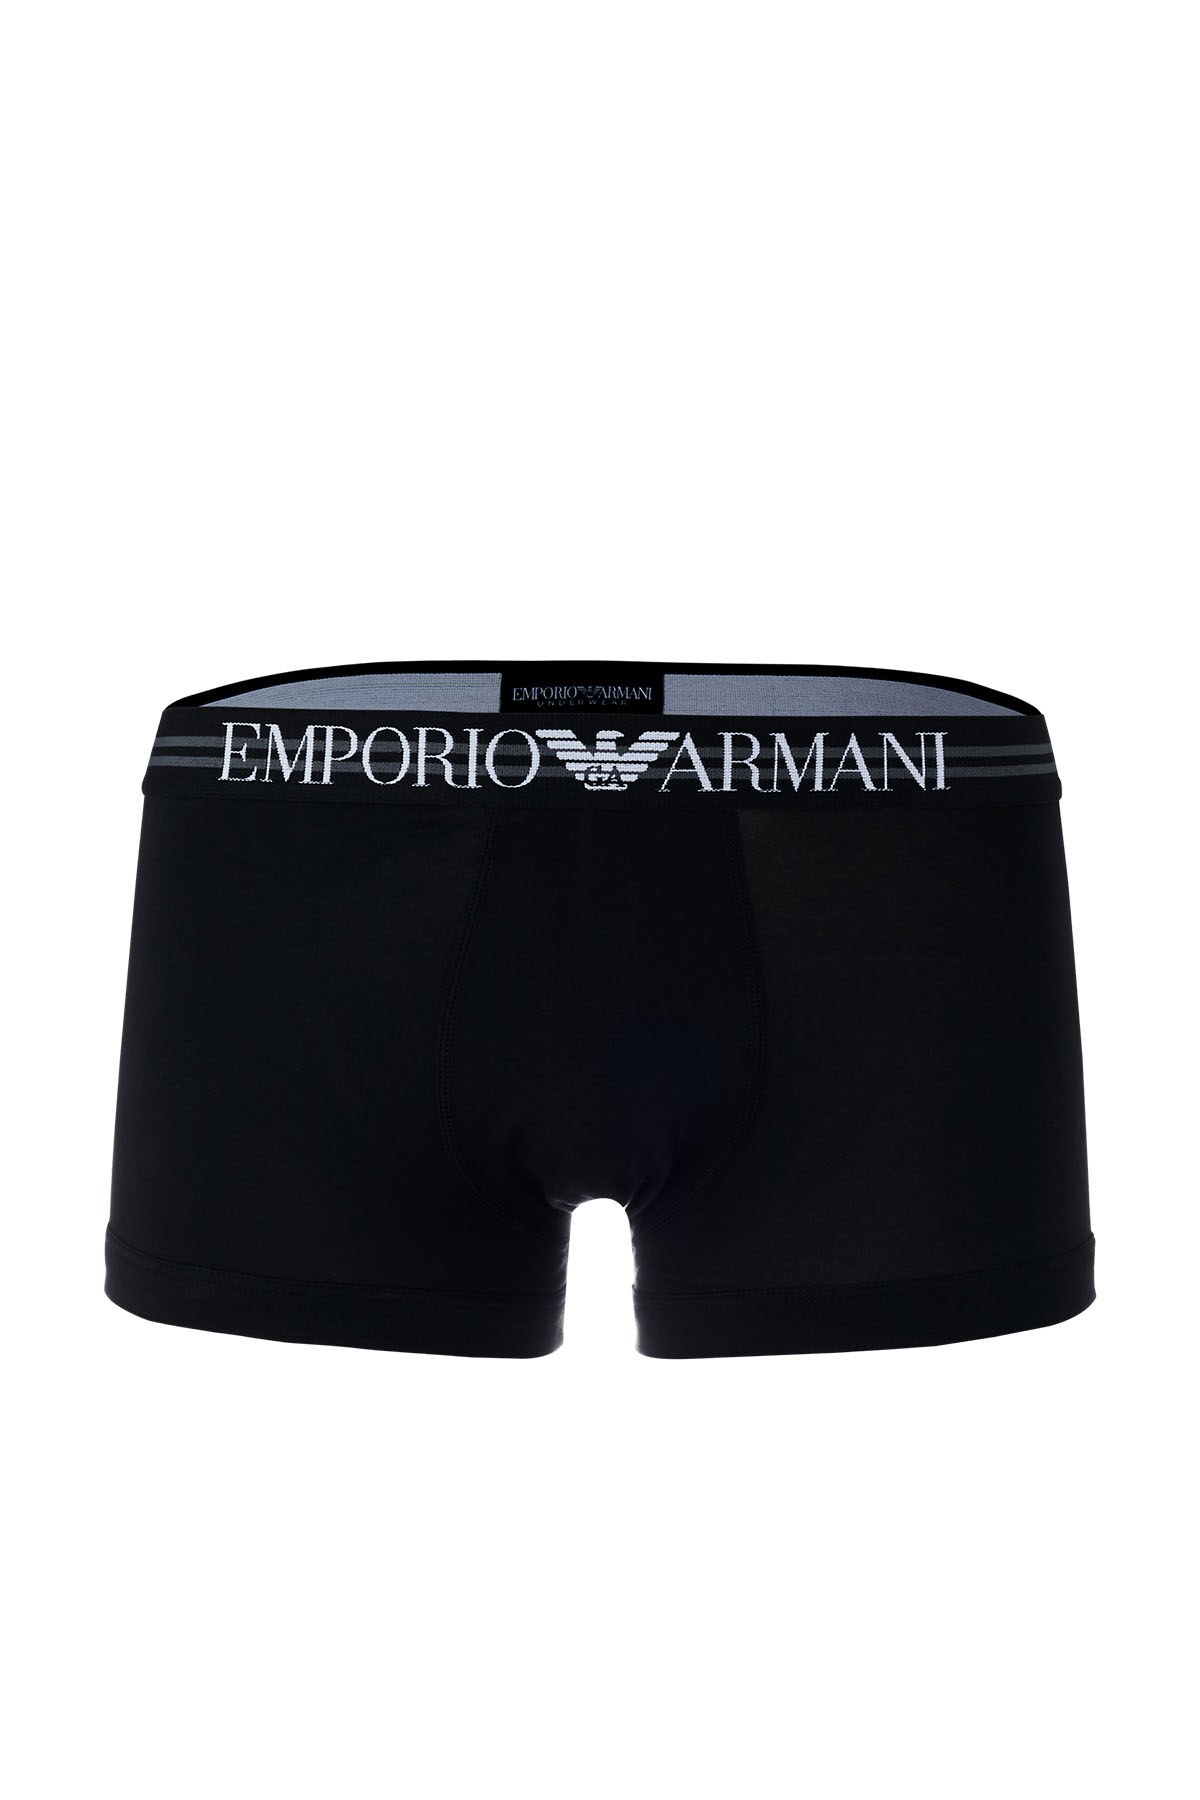 Emporio Armani Pamuklu 3 Pack Erkek Boxer 111357 1P723 21320 SİYAH